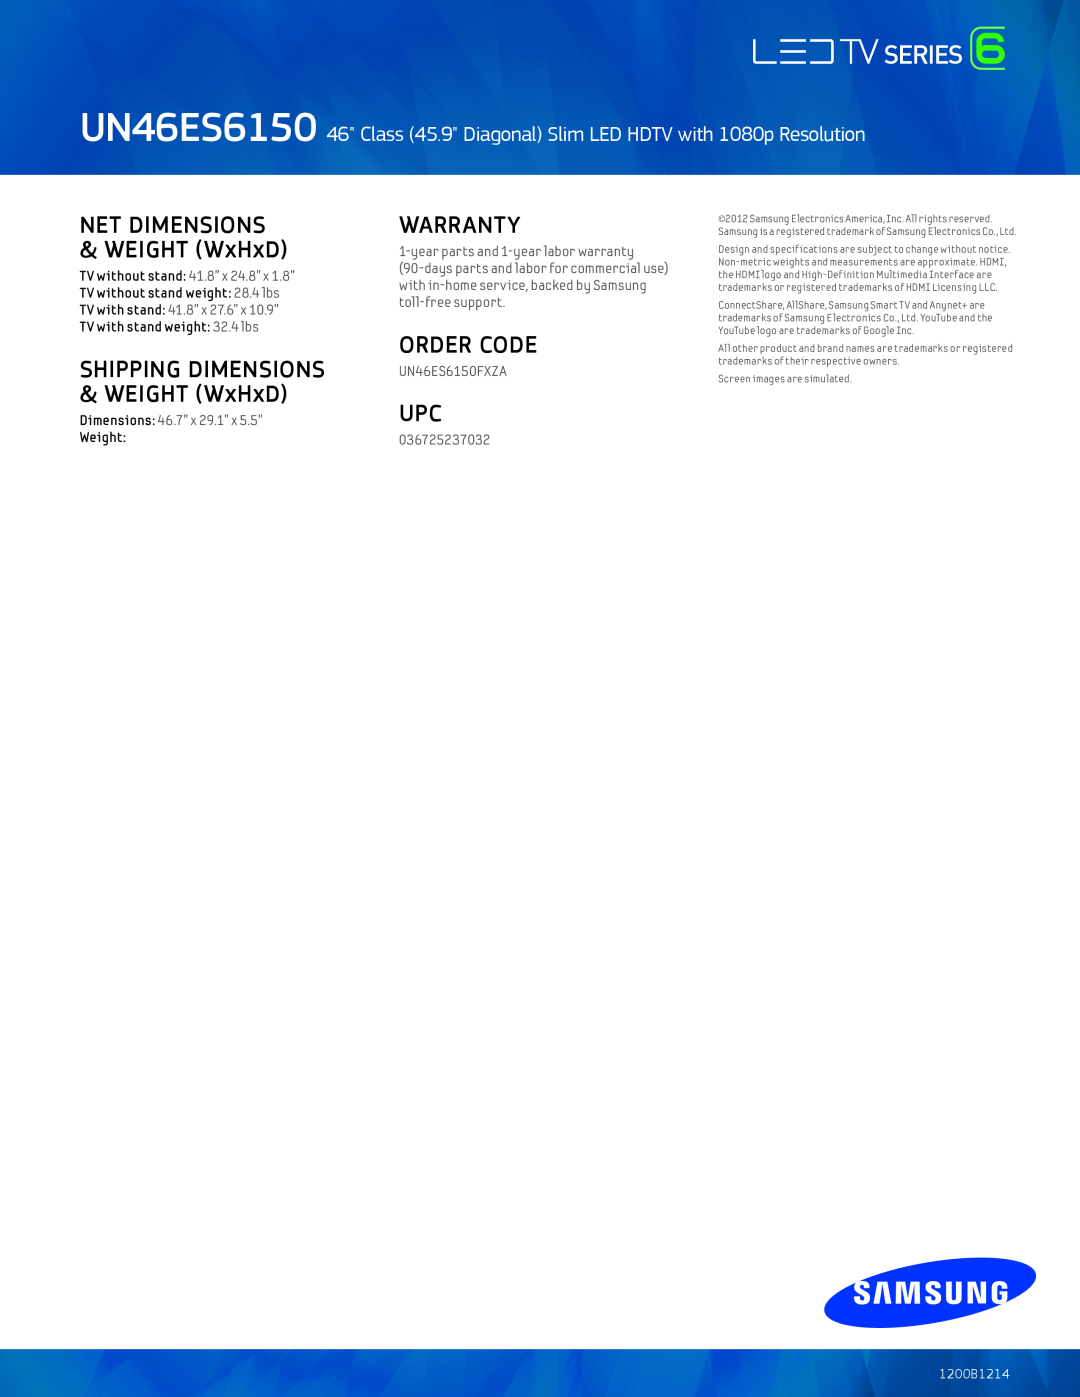 Samsung UN46ES6150 Warranty, Order Code, NET DIMENSIONS & WEIGHT WxHxD, SHIPPING DIMENSIONS & WEIGHT WxHxD, 1200B1214 